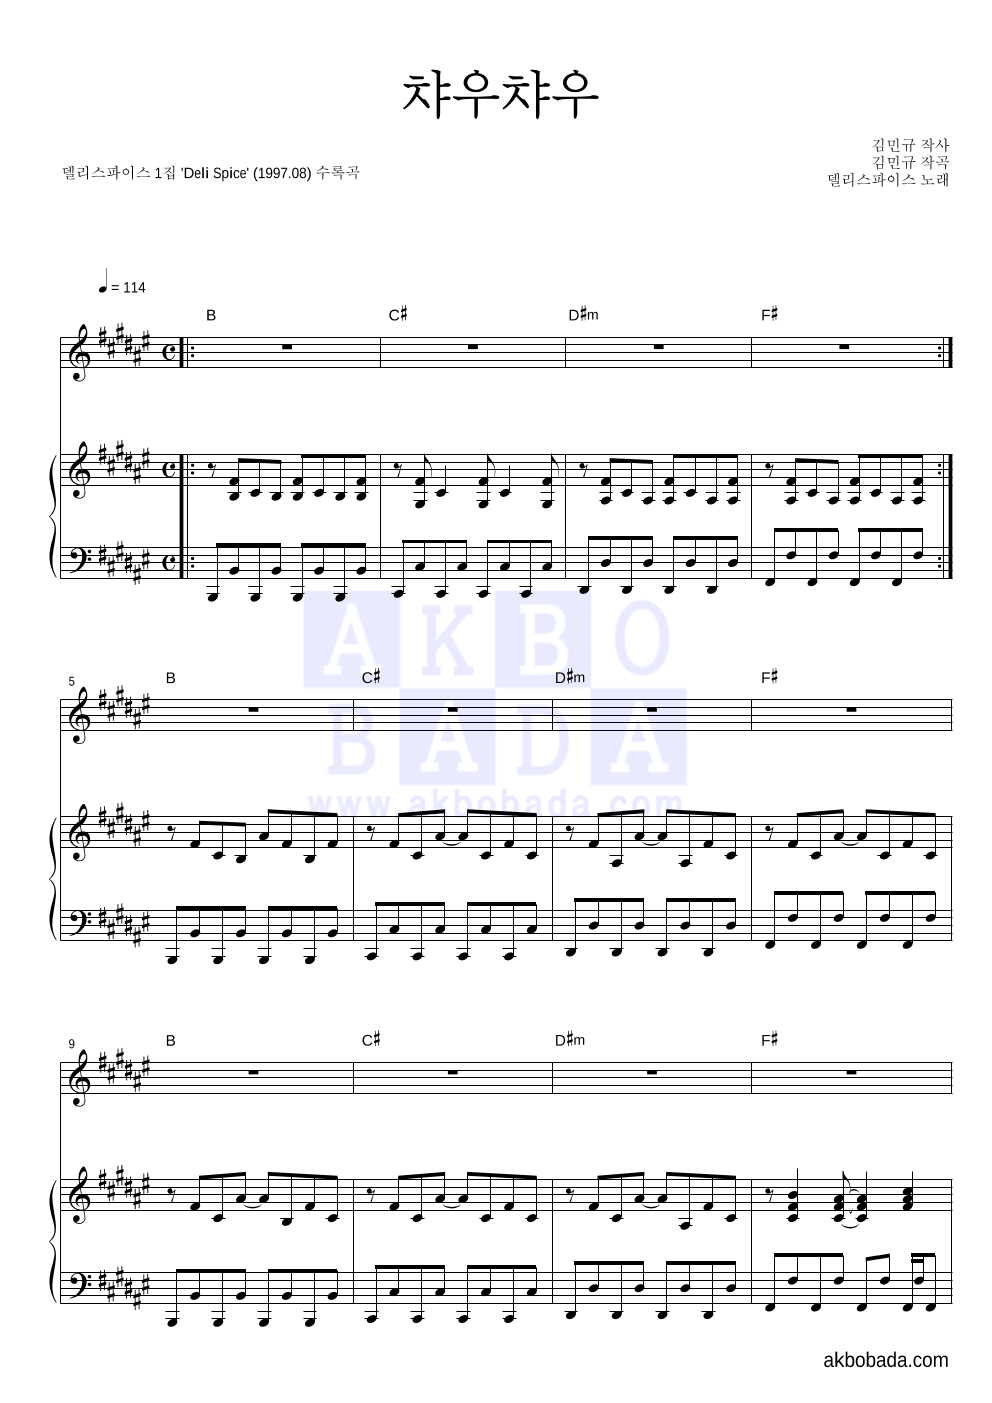 델리 스파이스 - 챠우챠우 피아노 3단 악보 